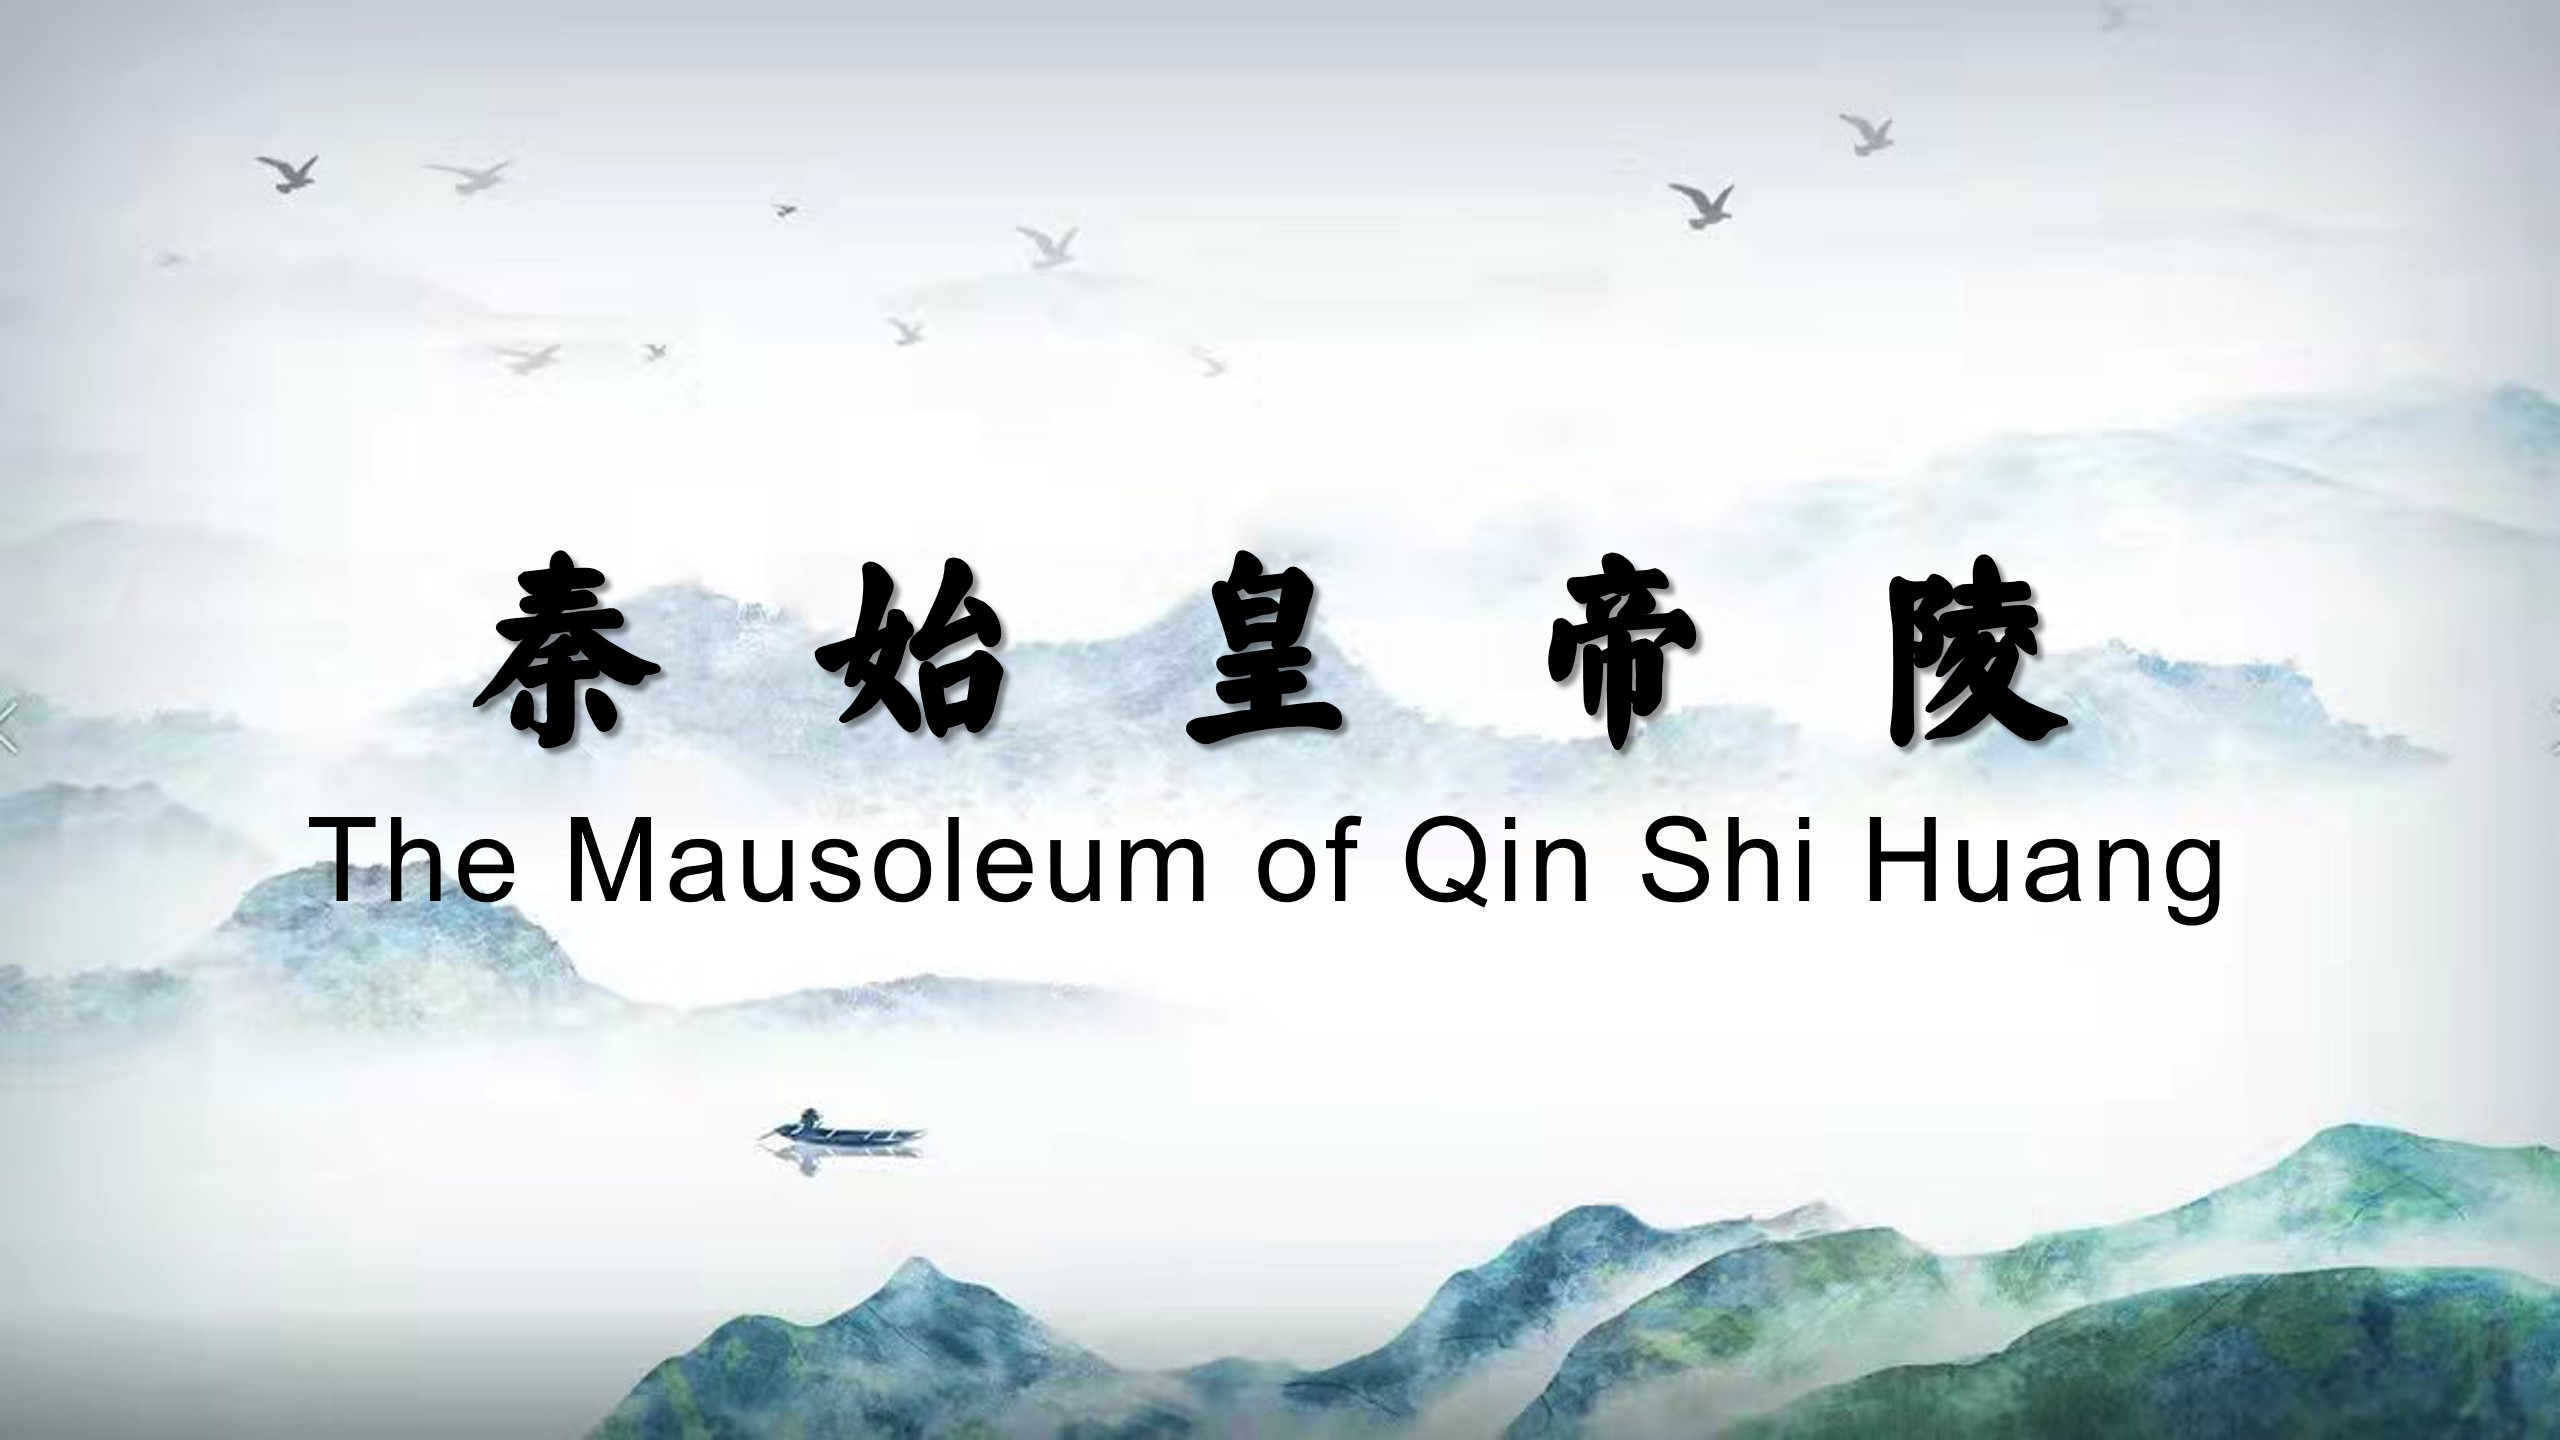 The Mausoleum of Qin Shi Huang